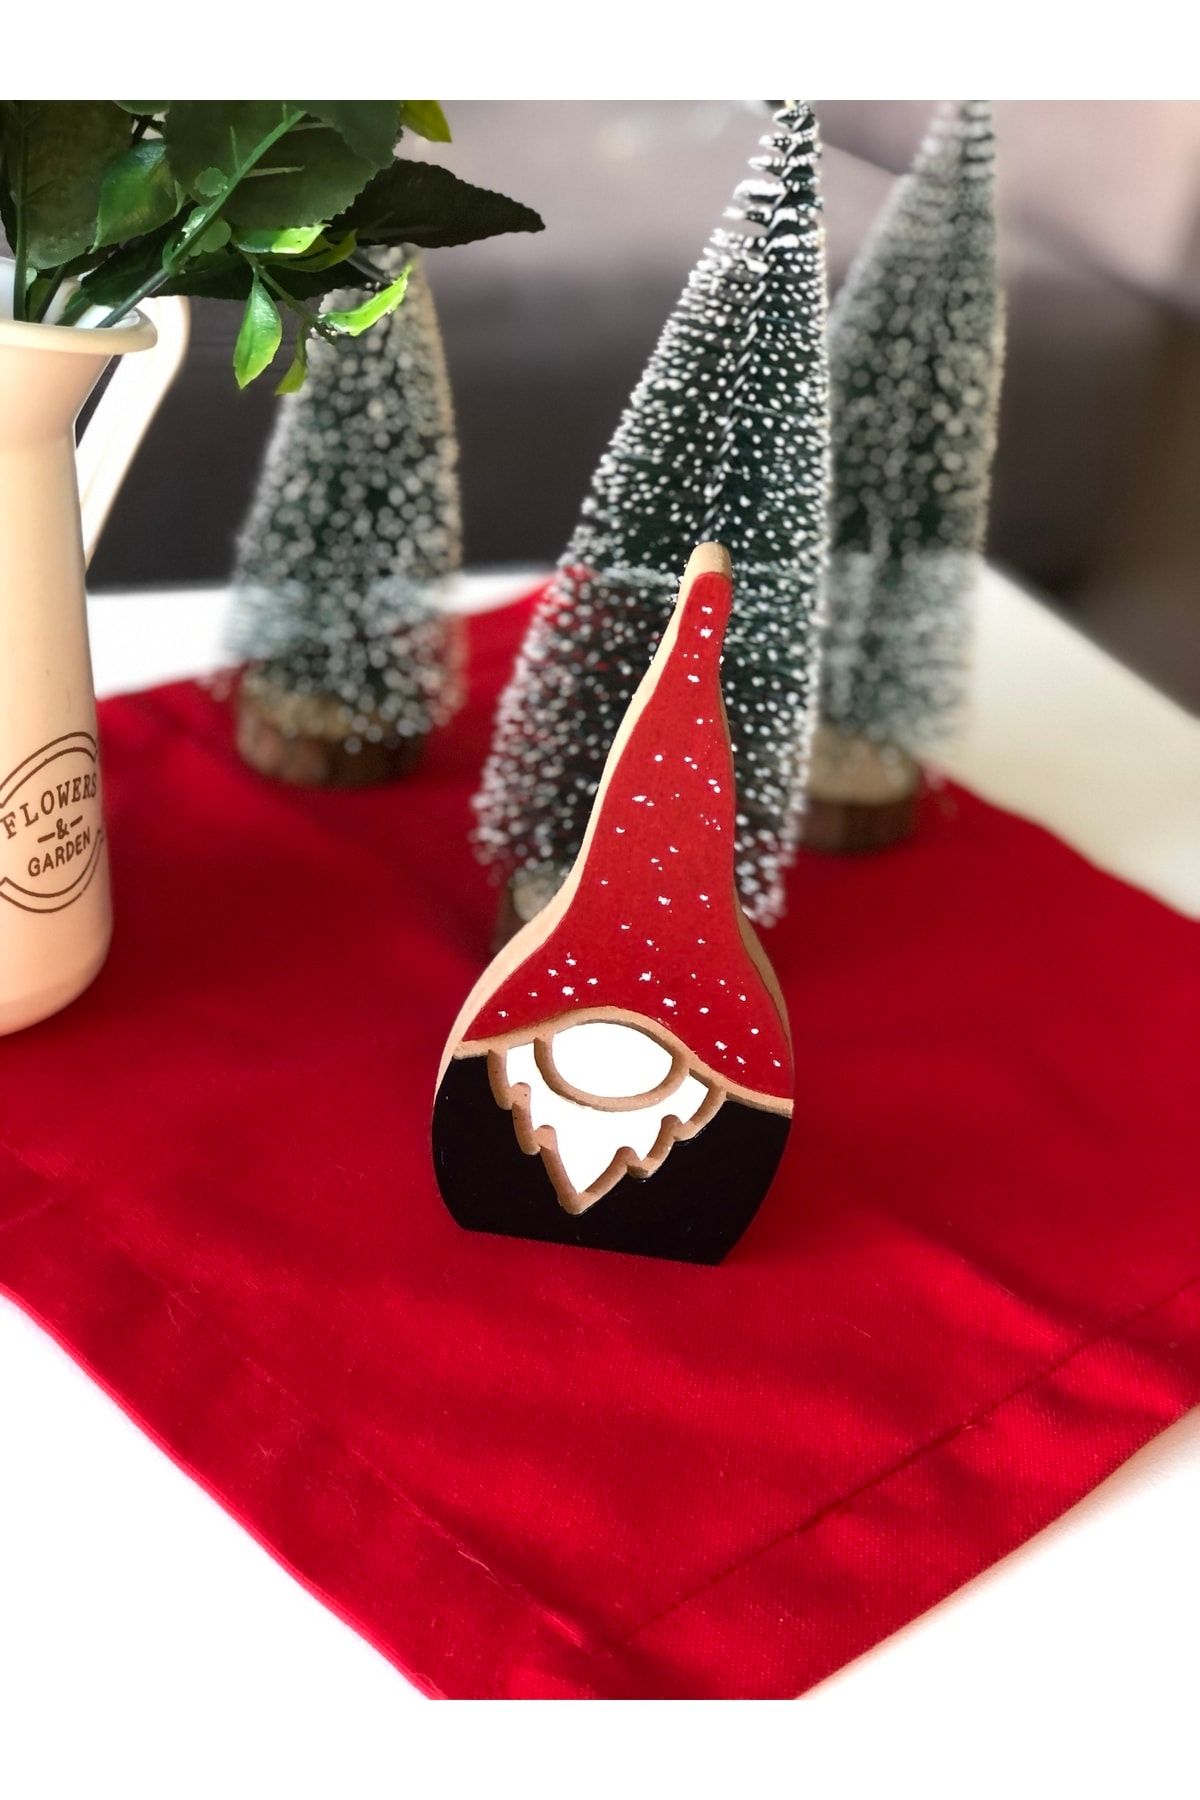 Ayd Home Yılbaşı Gnome Cüce Ahşap 15 Cm Süs Noel Yeniyıl Hediye Christmas Newyear Kırmızı